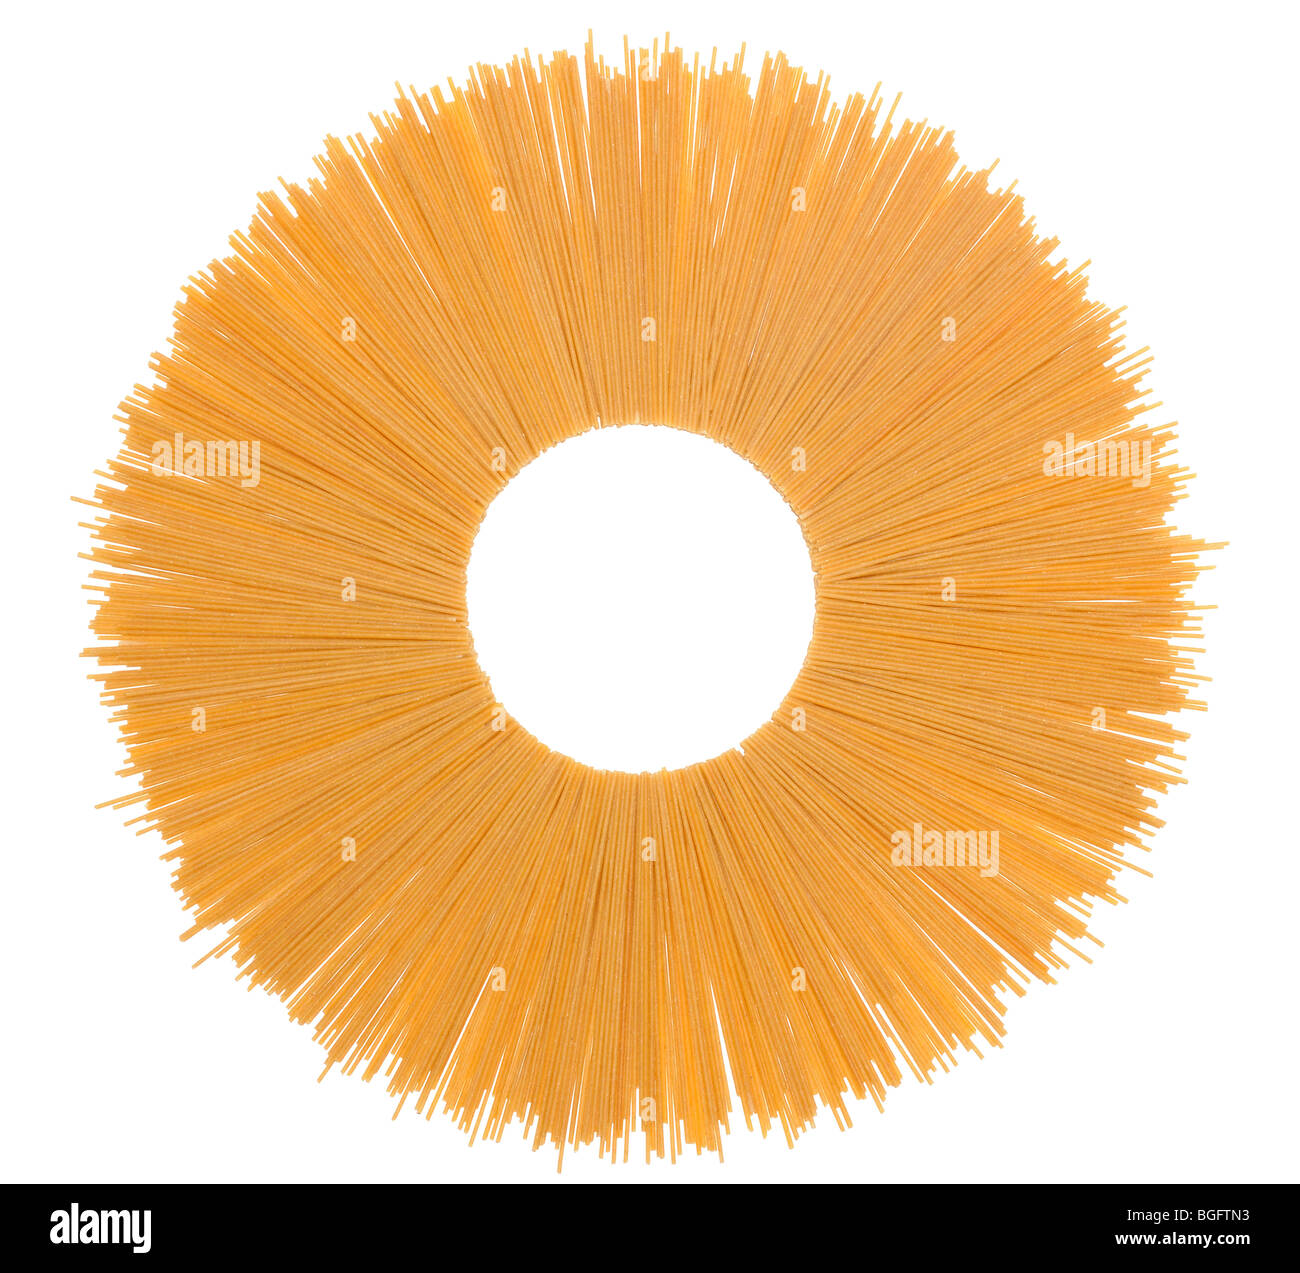 Spaghetti complets au fil isolé sur fond blanc Banque D'Images